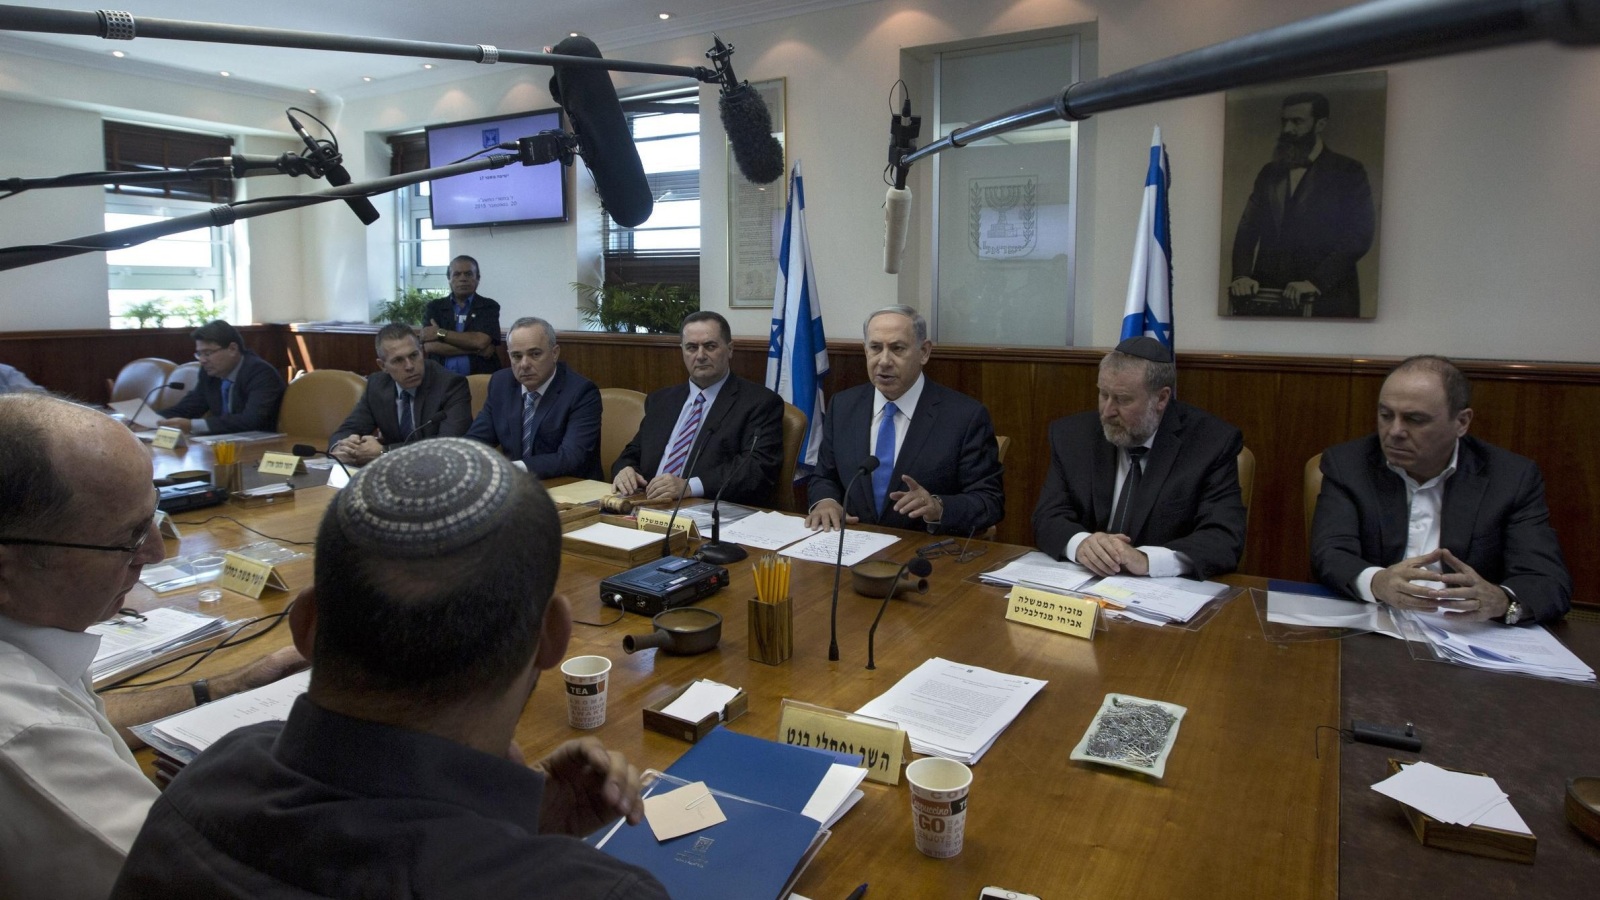 ‪نتنياهو يبلغ الوزراء أن إسرائيل لن تعترف باتفاق المصالحة، لكنها لن تقطع علاقاتها مع السلطة الفلسطينية بسببه‬ (الأوروبية)